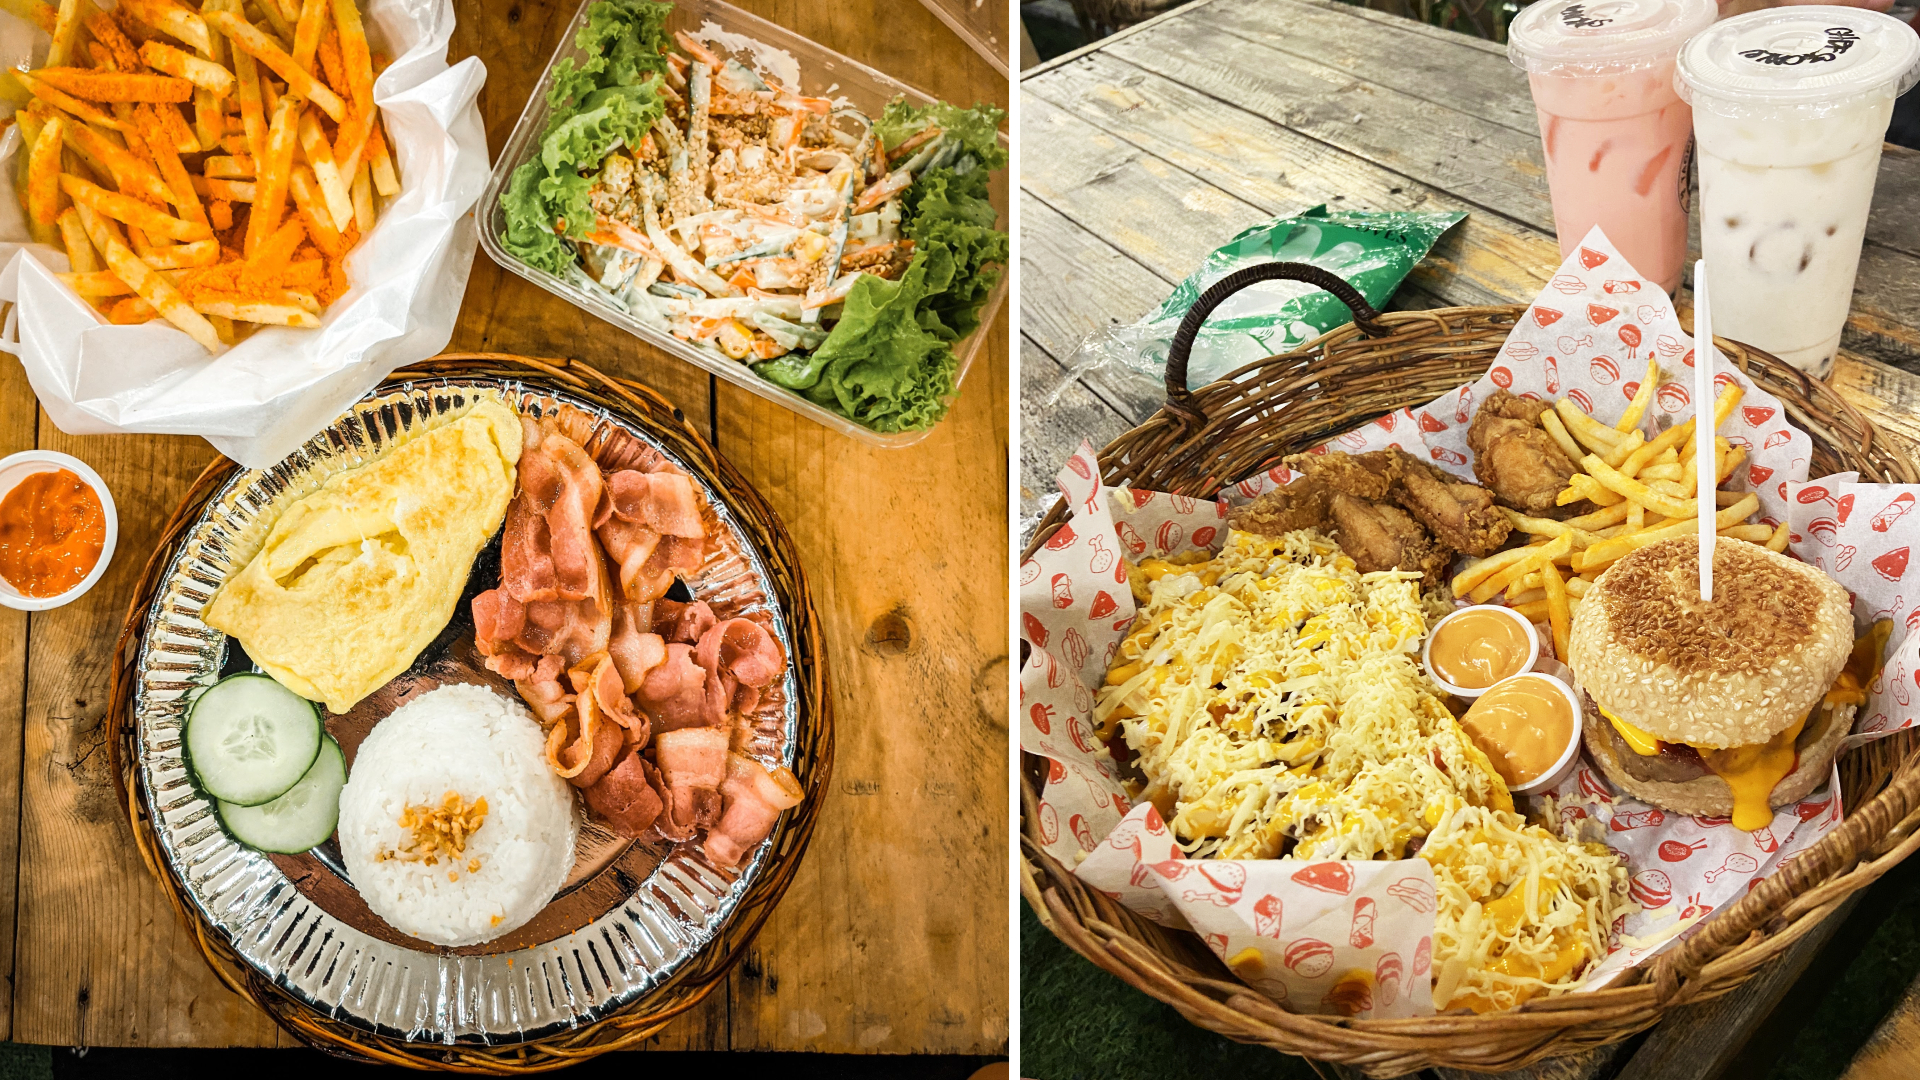 Tagpuan Lakeview Rizal - various food items